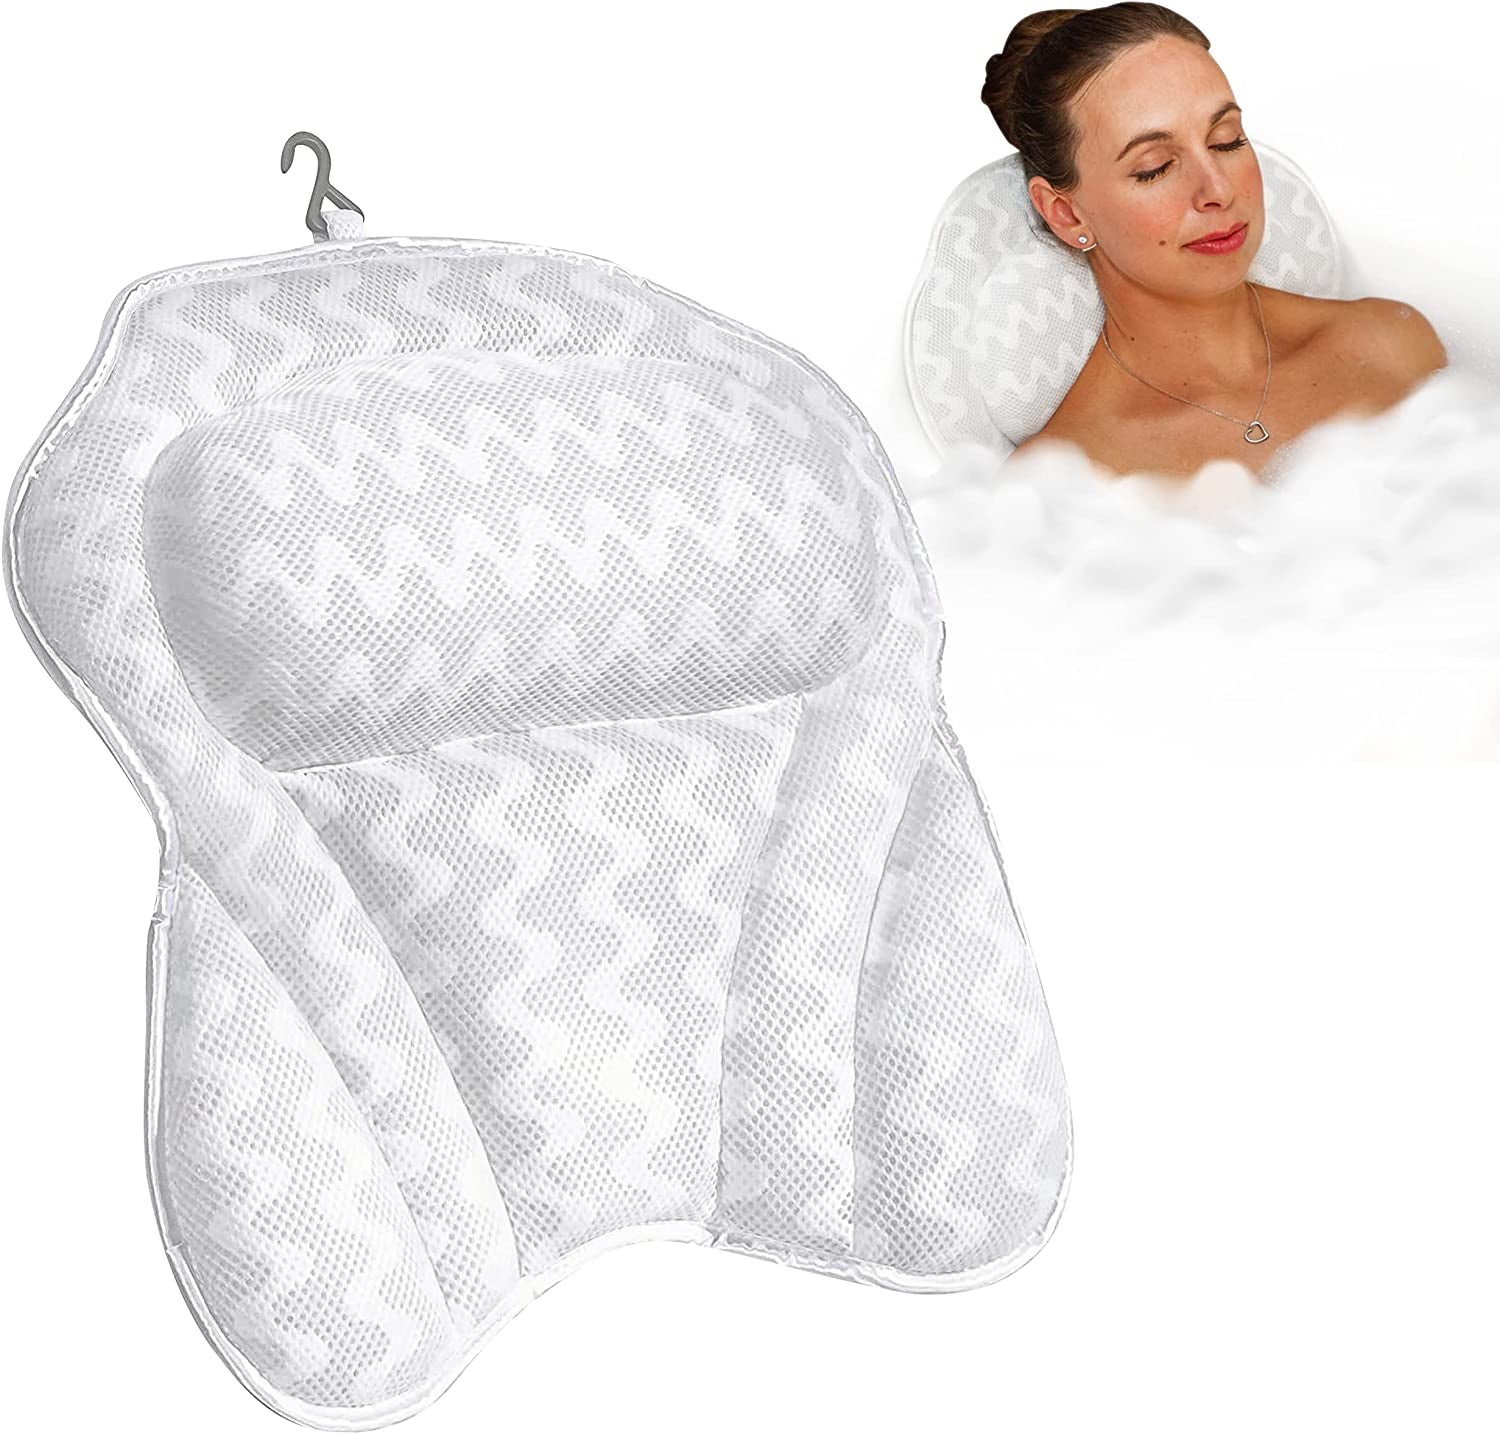 tobchonp White Bath Tub Home Spa Massage Cushion Neck & Back Rest